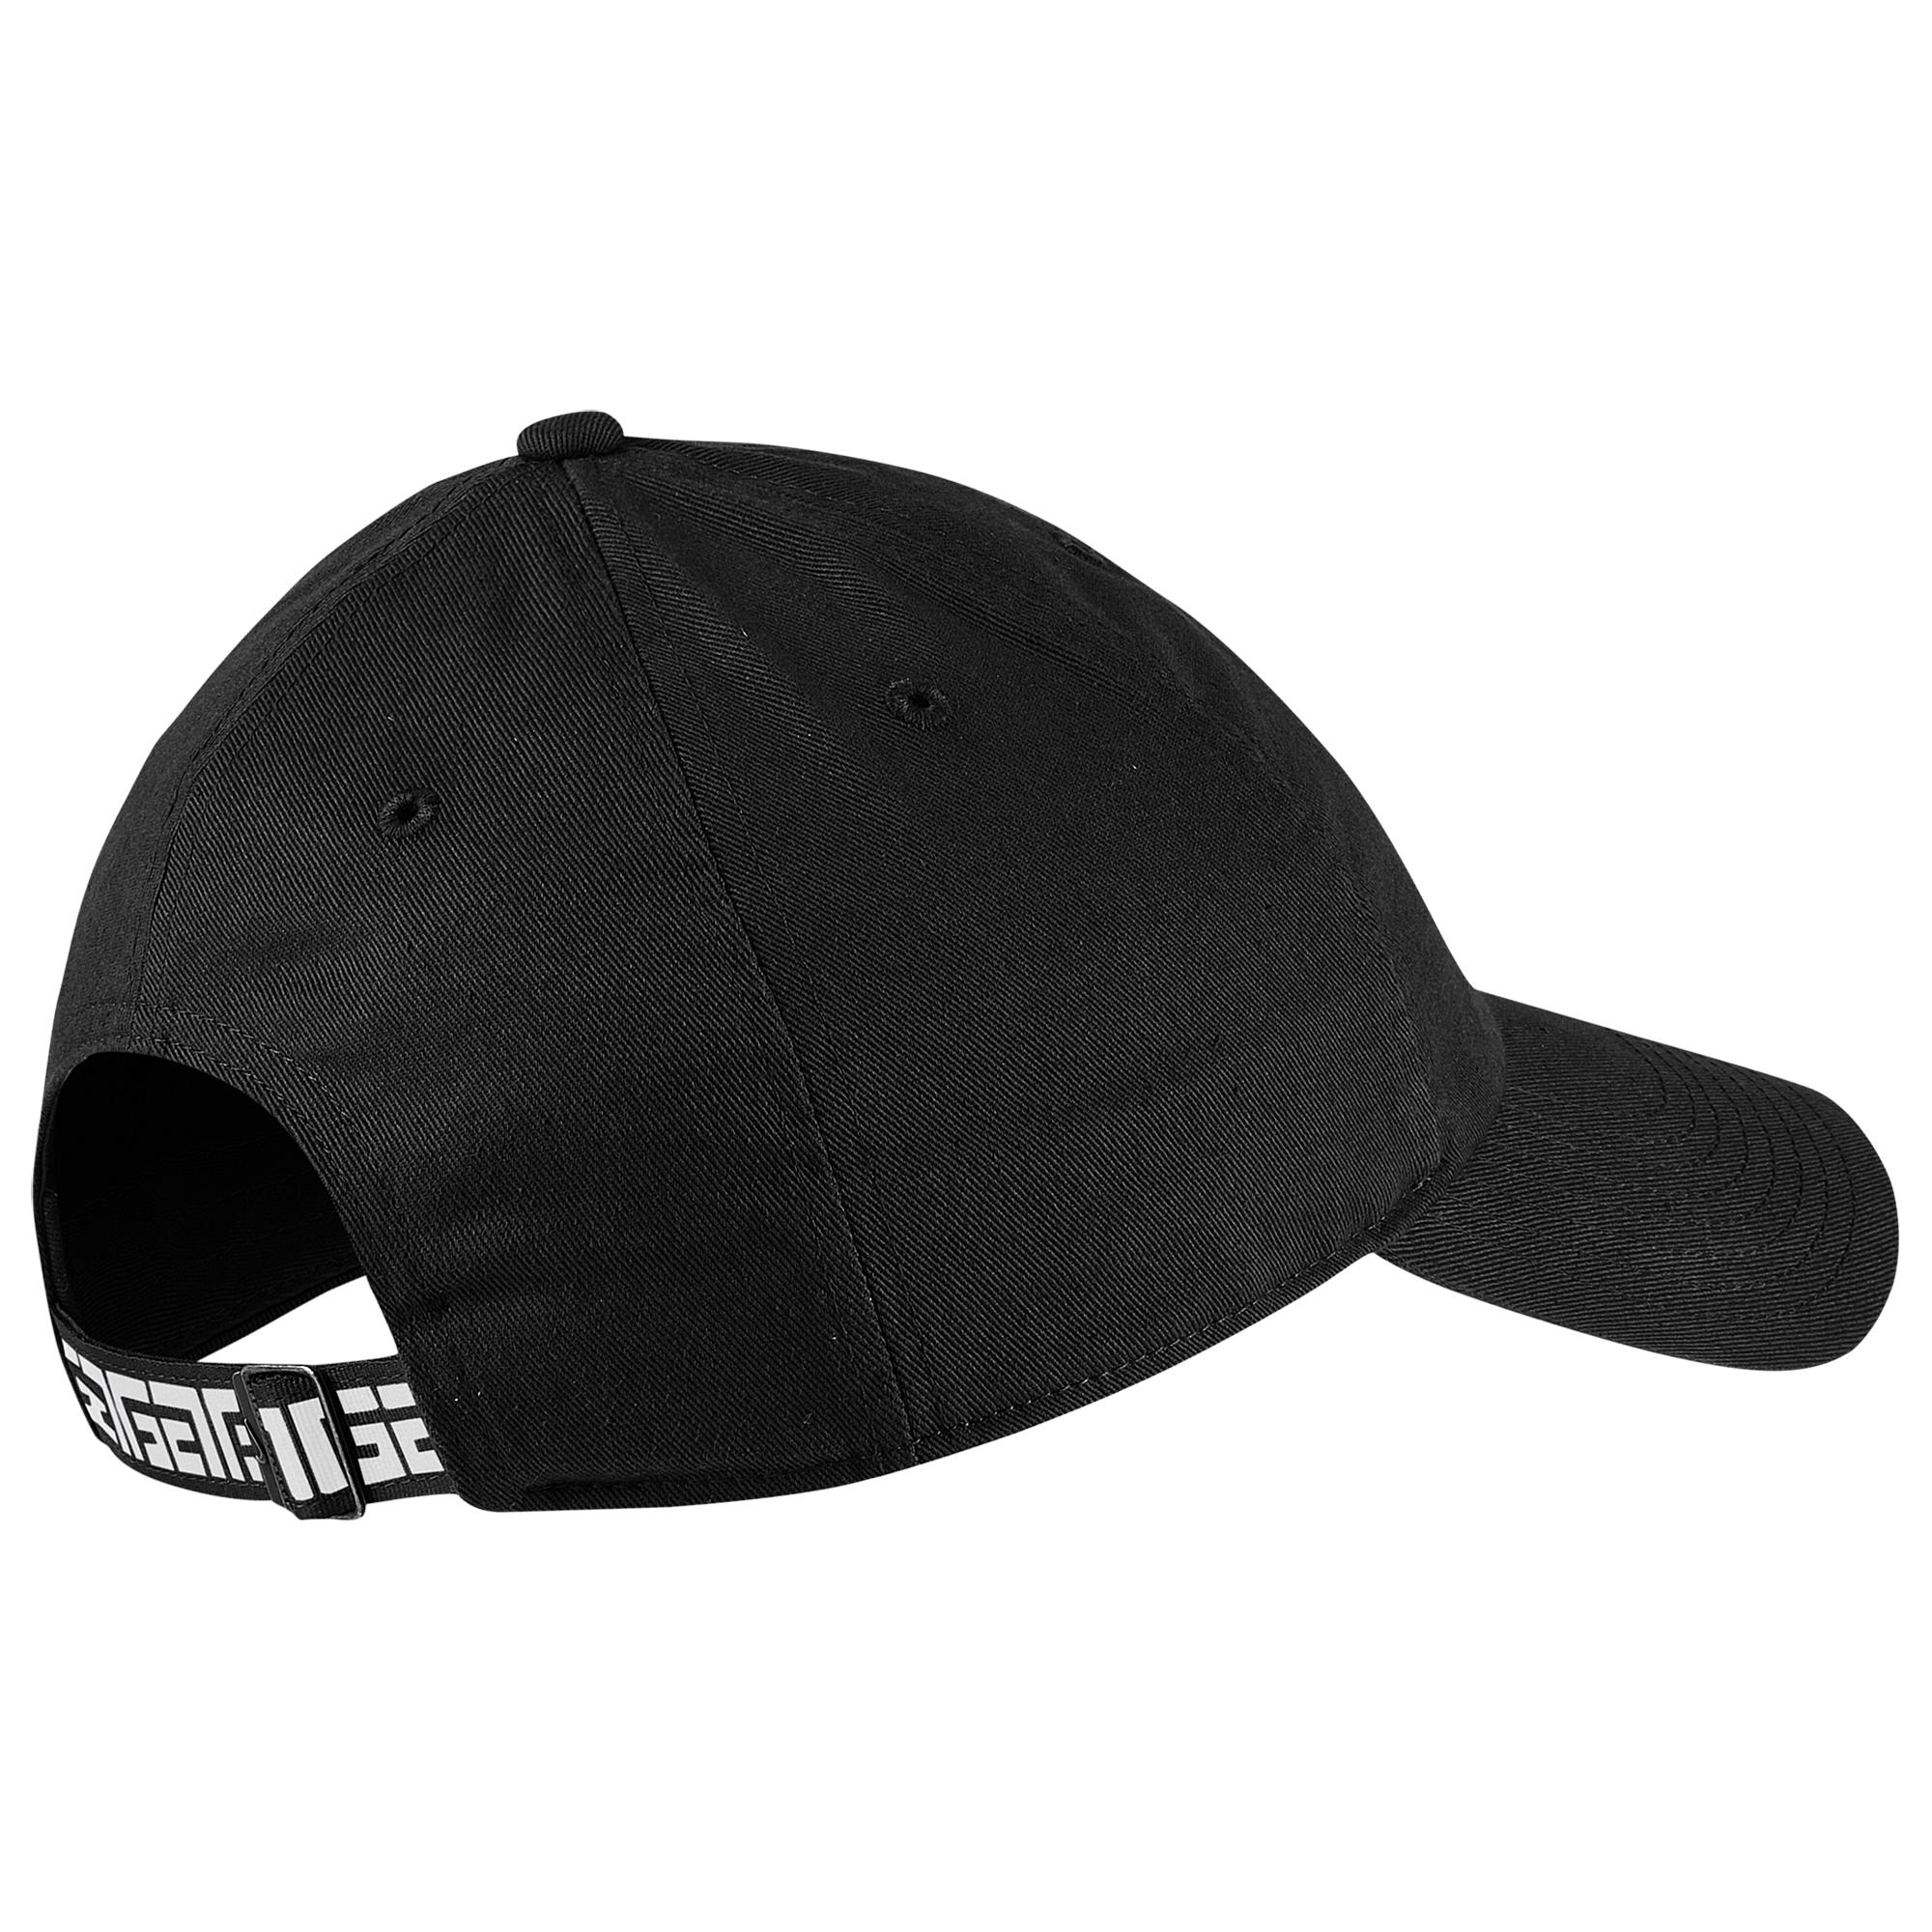 Nike Synthetic Giannis H86 Freak Hat in Black/White (Black) for Men - Lyst